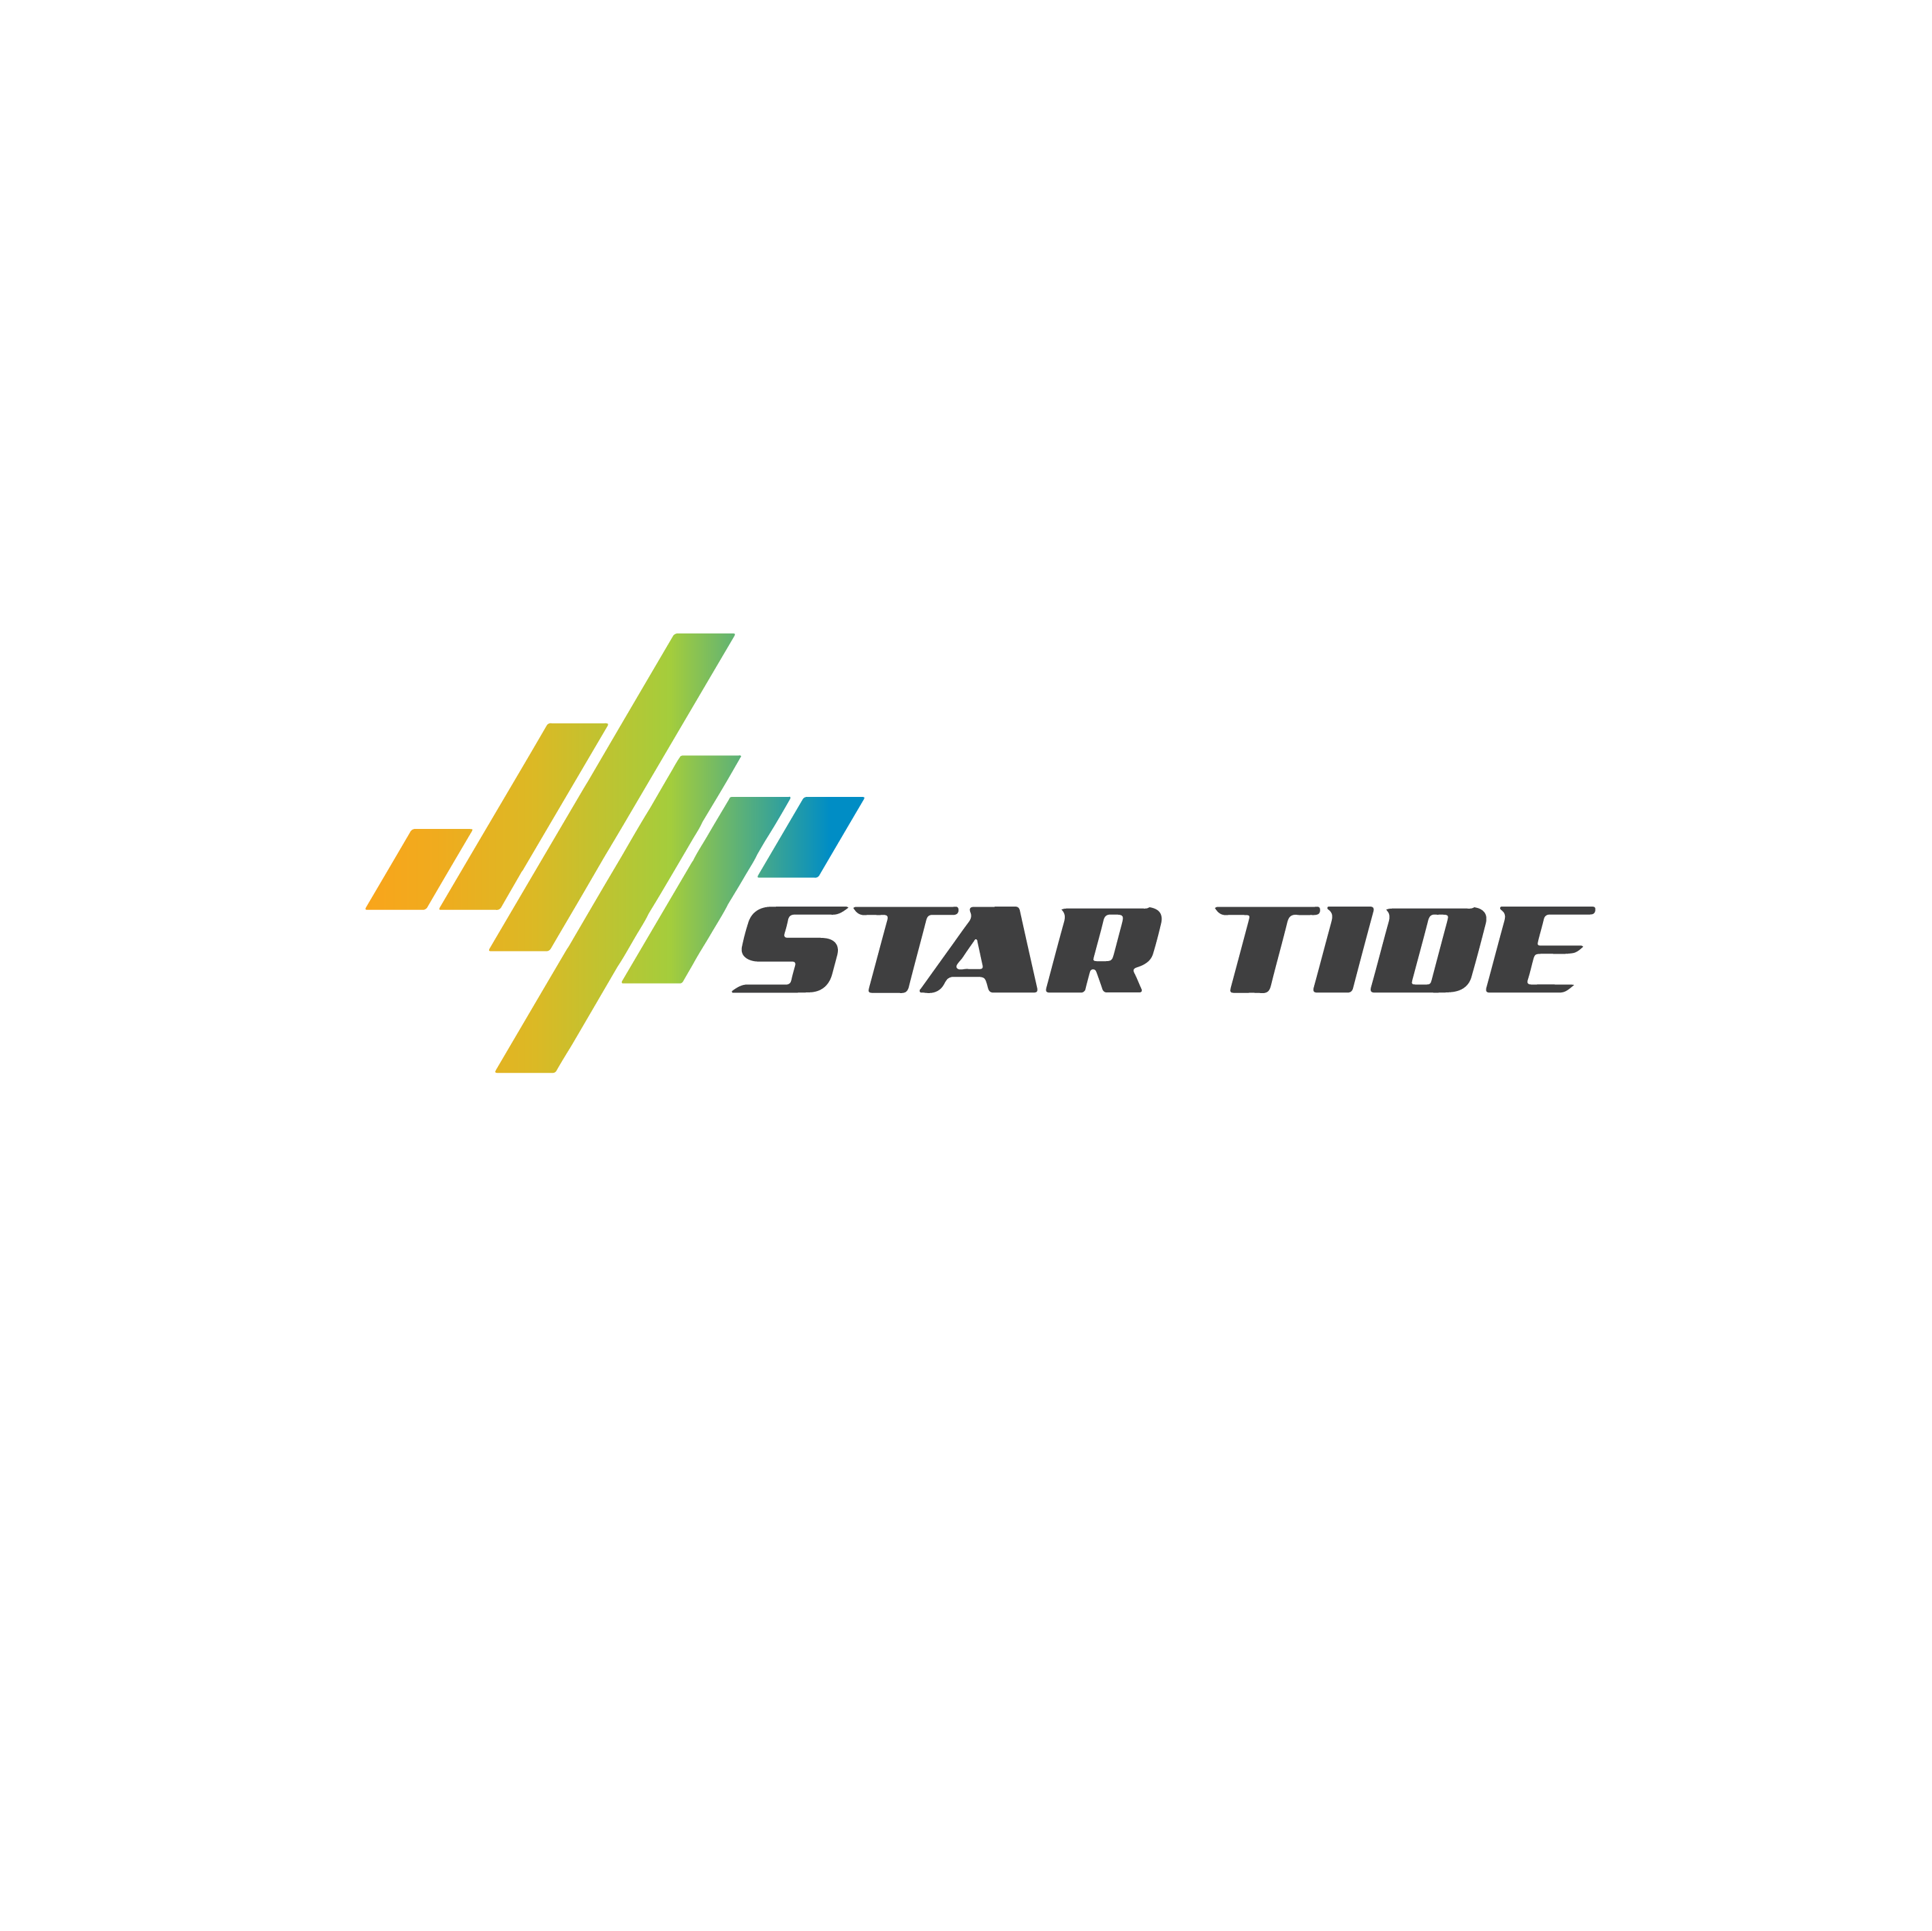 MI-C star-tide